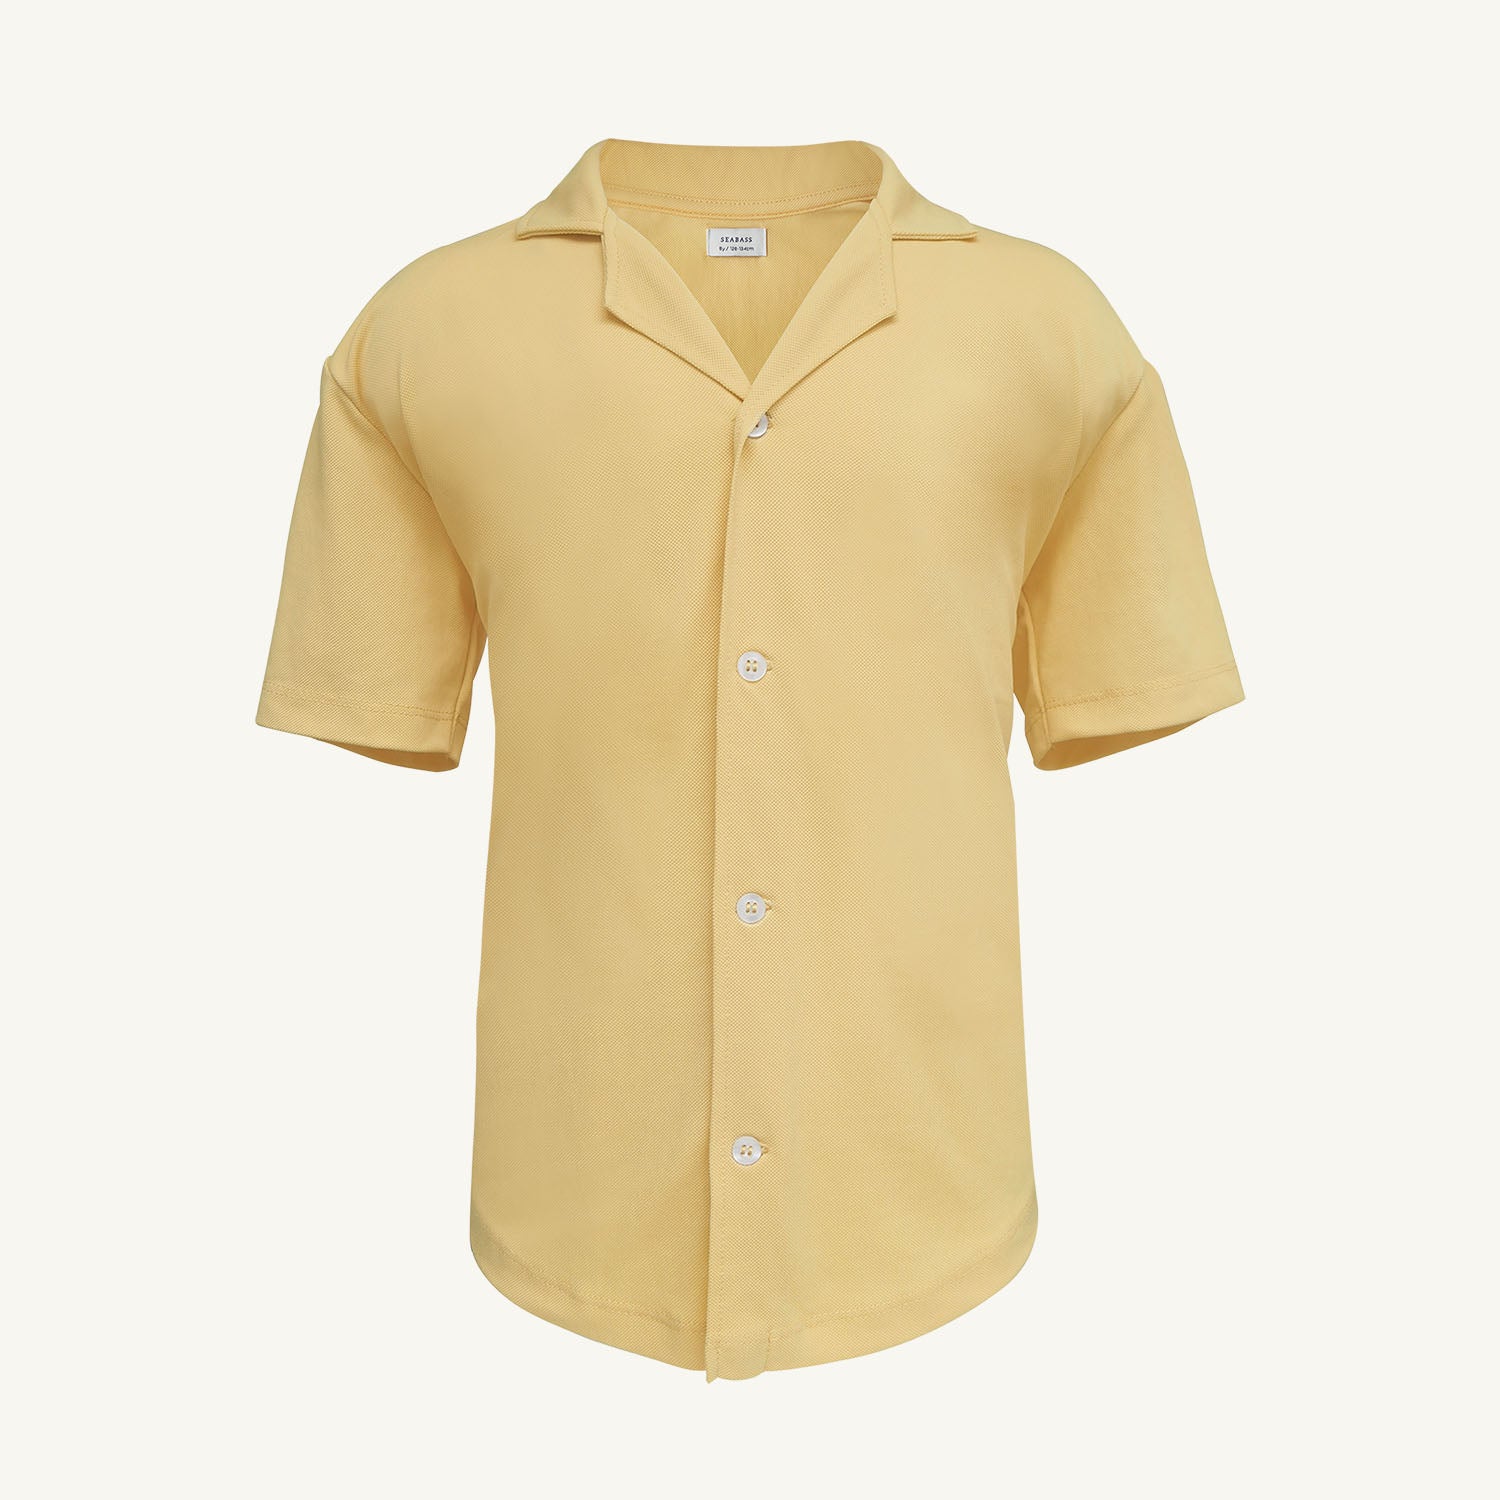 Camisa corta de niño con protección solar - amarillo 